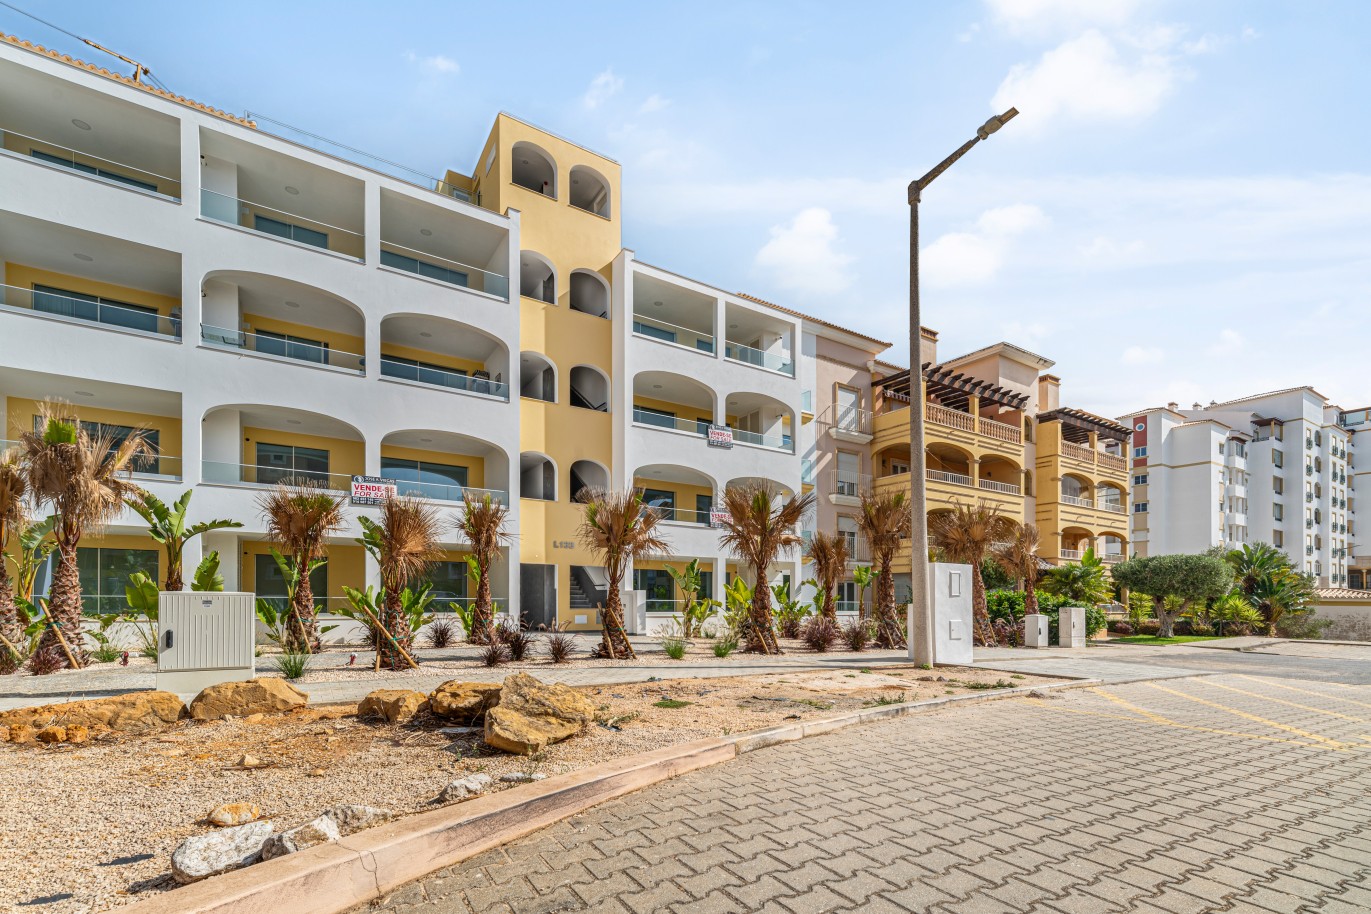 Verkauf einer Wohnung im Bau, mit Terrasse, Lagos, Algarve, Portugal_238548